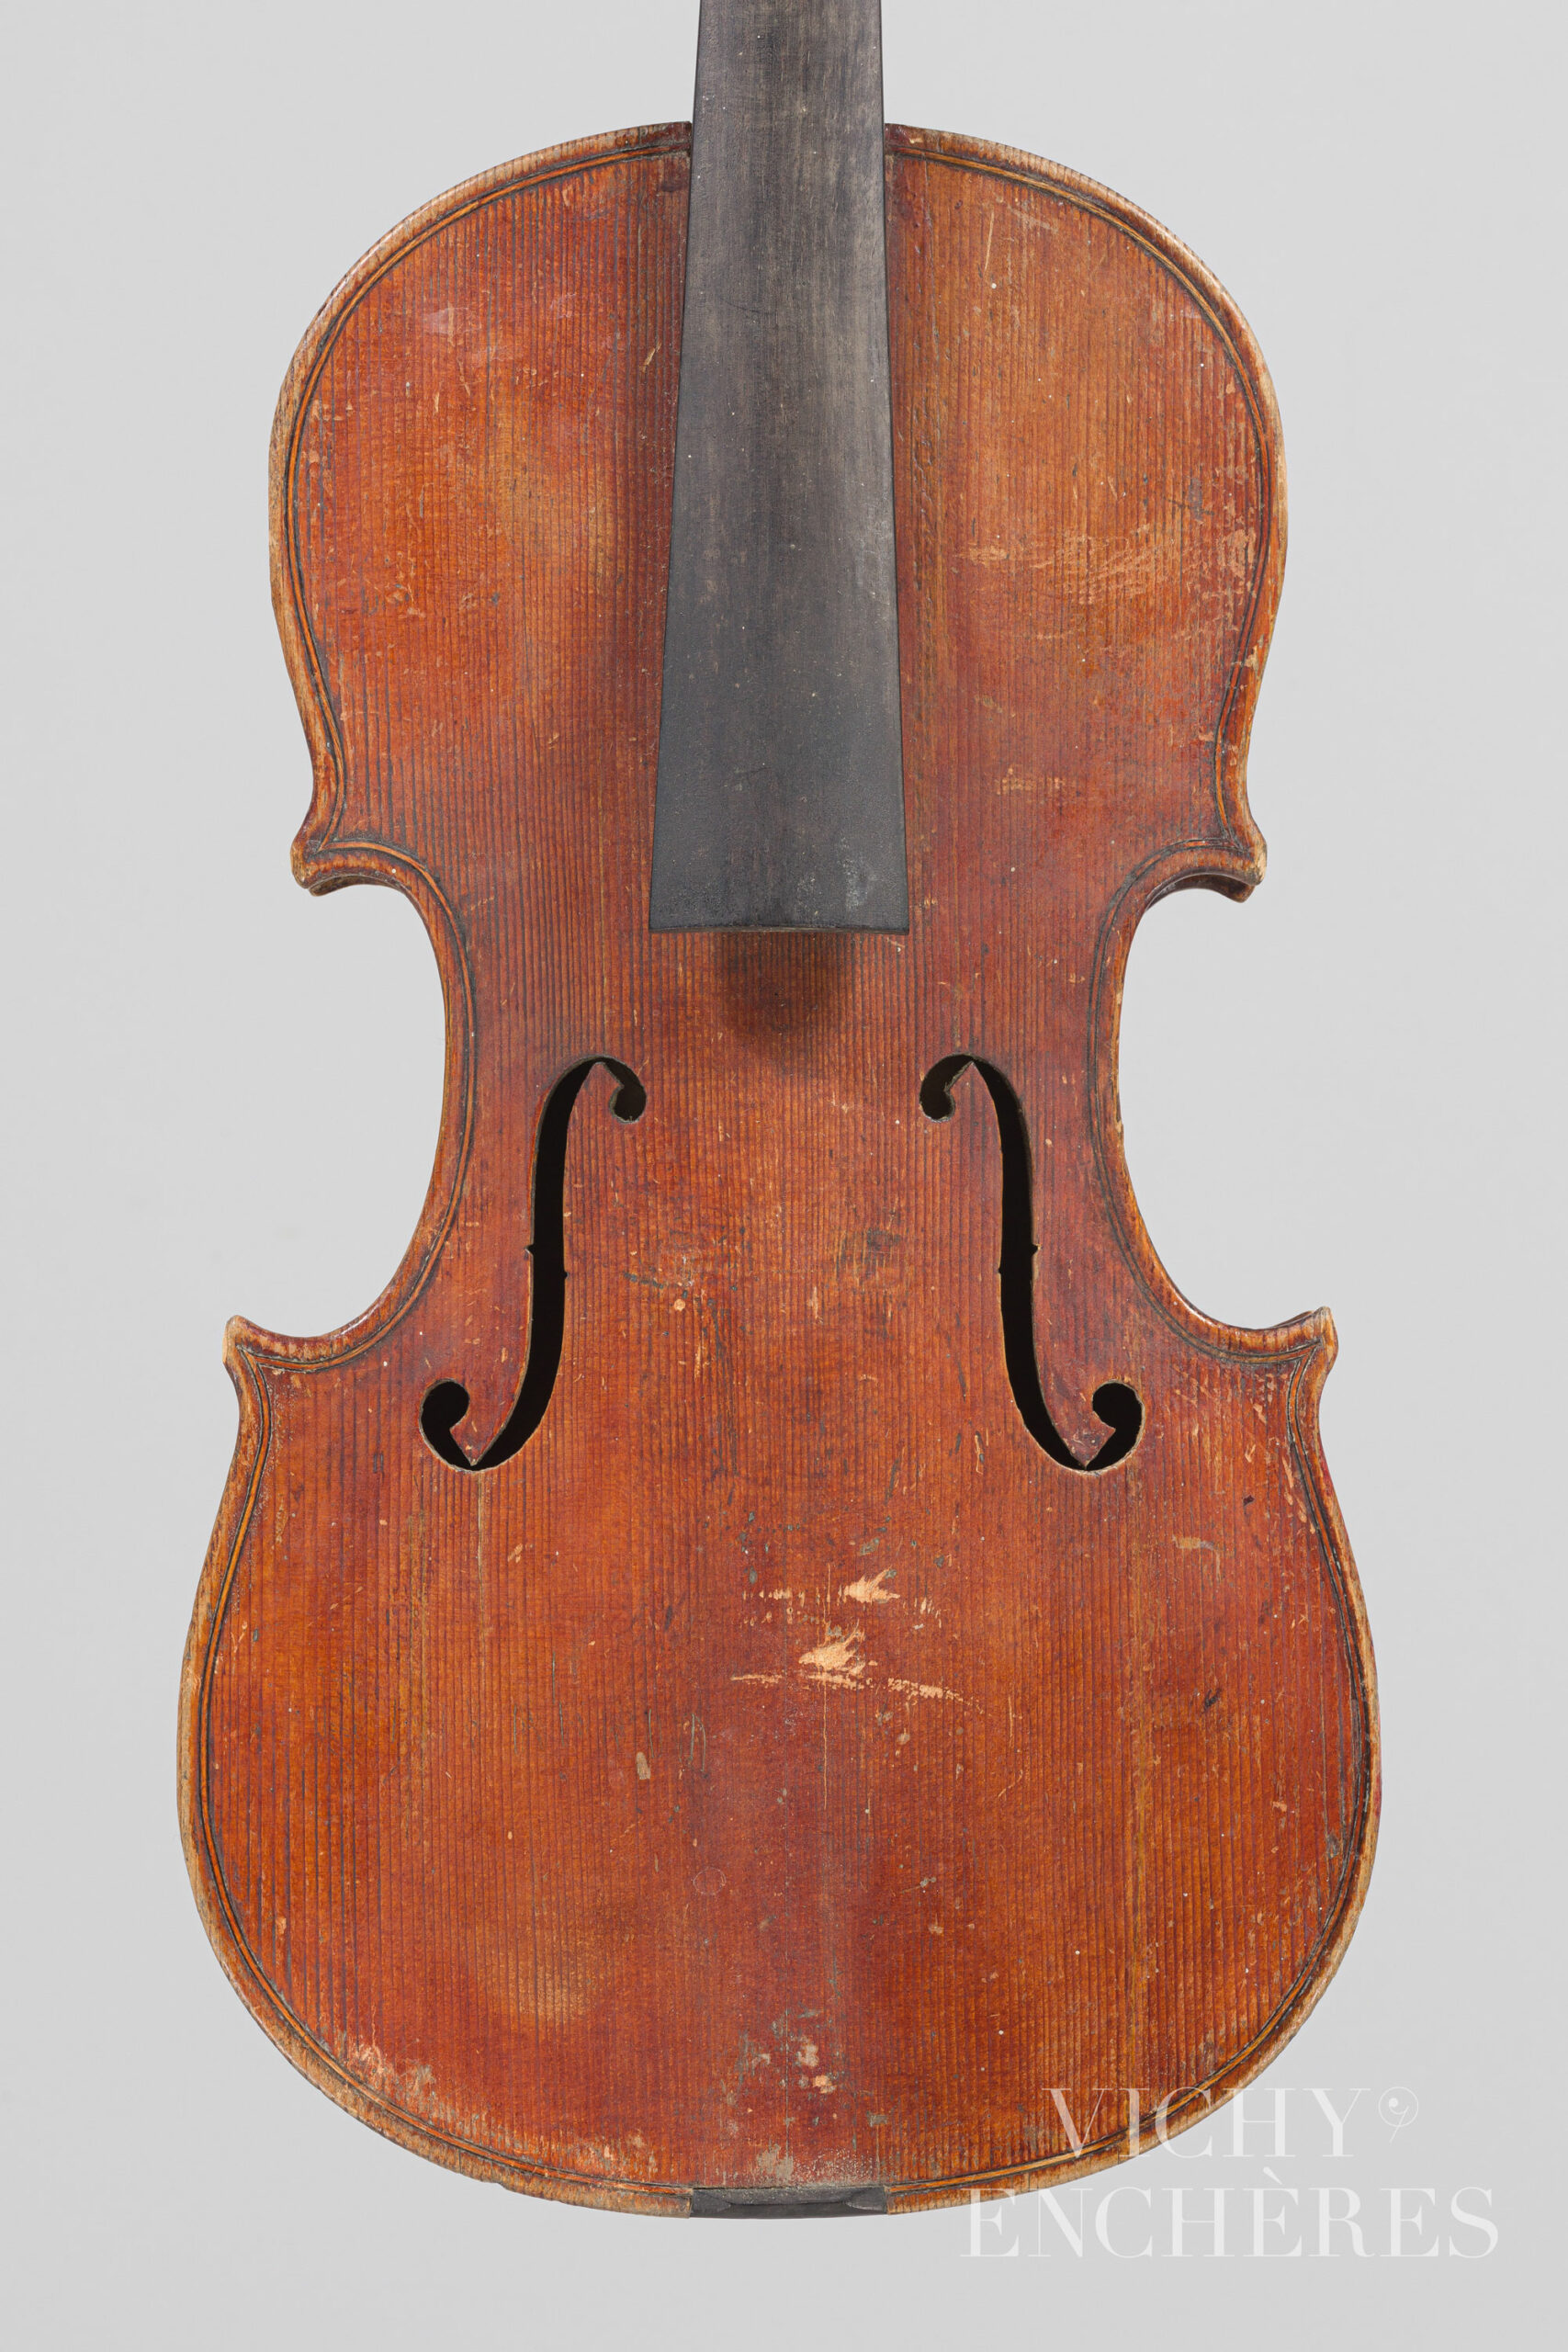 Violon 3/4 de Stefano SCARAMPELLA Instrument mis en vente par Vichy Enchères le 1er décembre 2022 © Christophe Darbelet